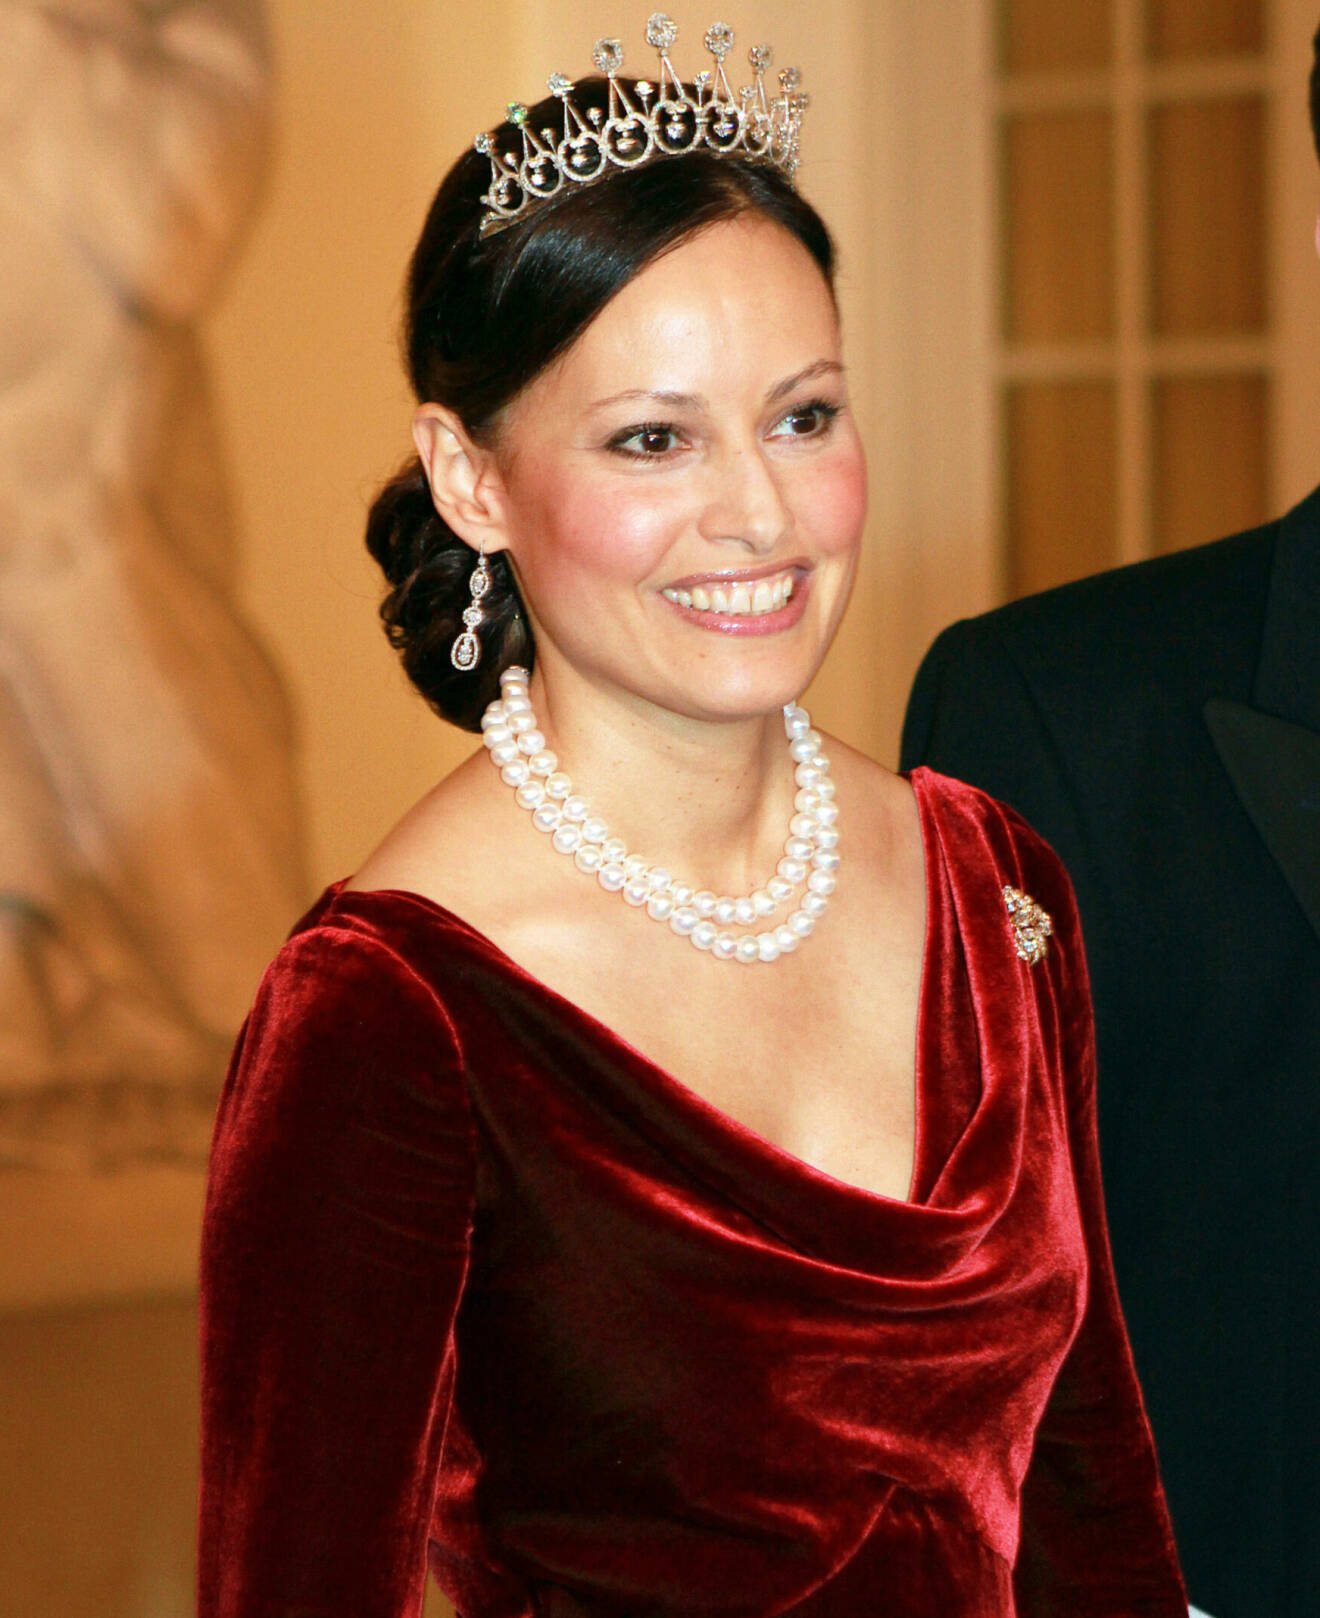 Prinsessan Carina född Axelsson